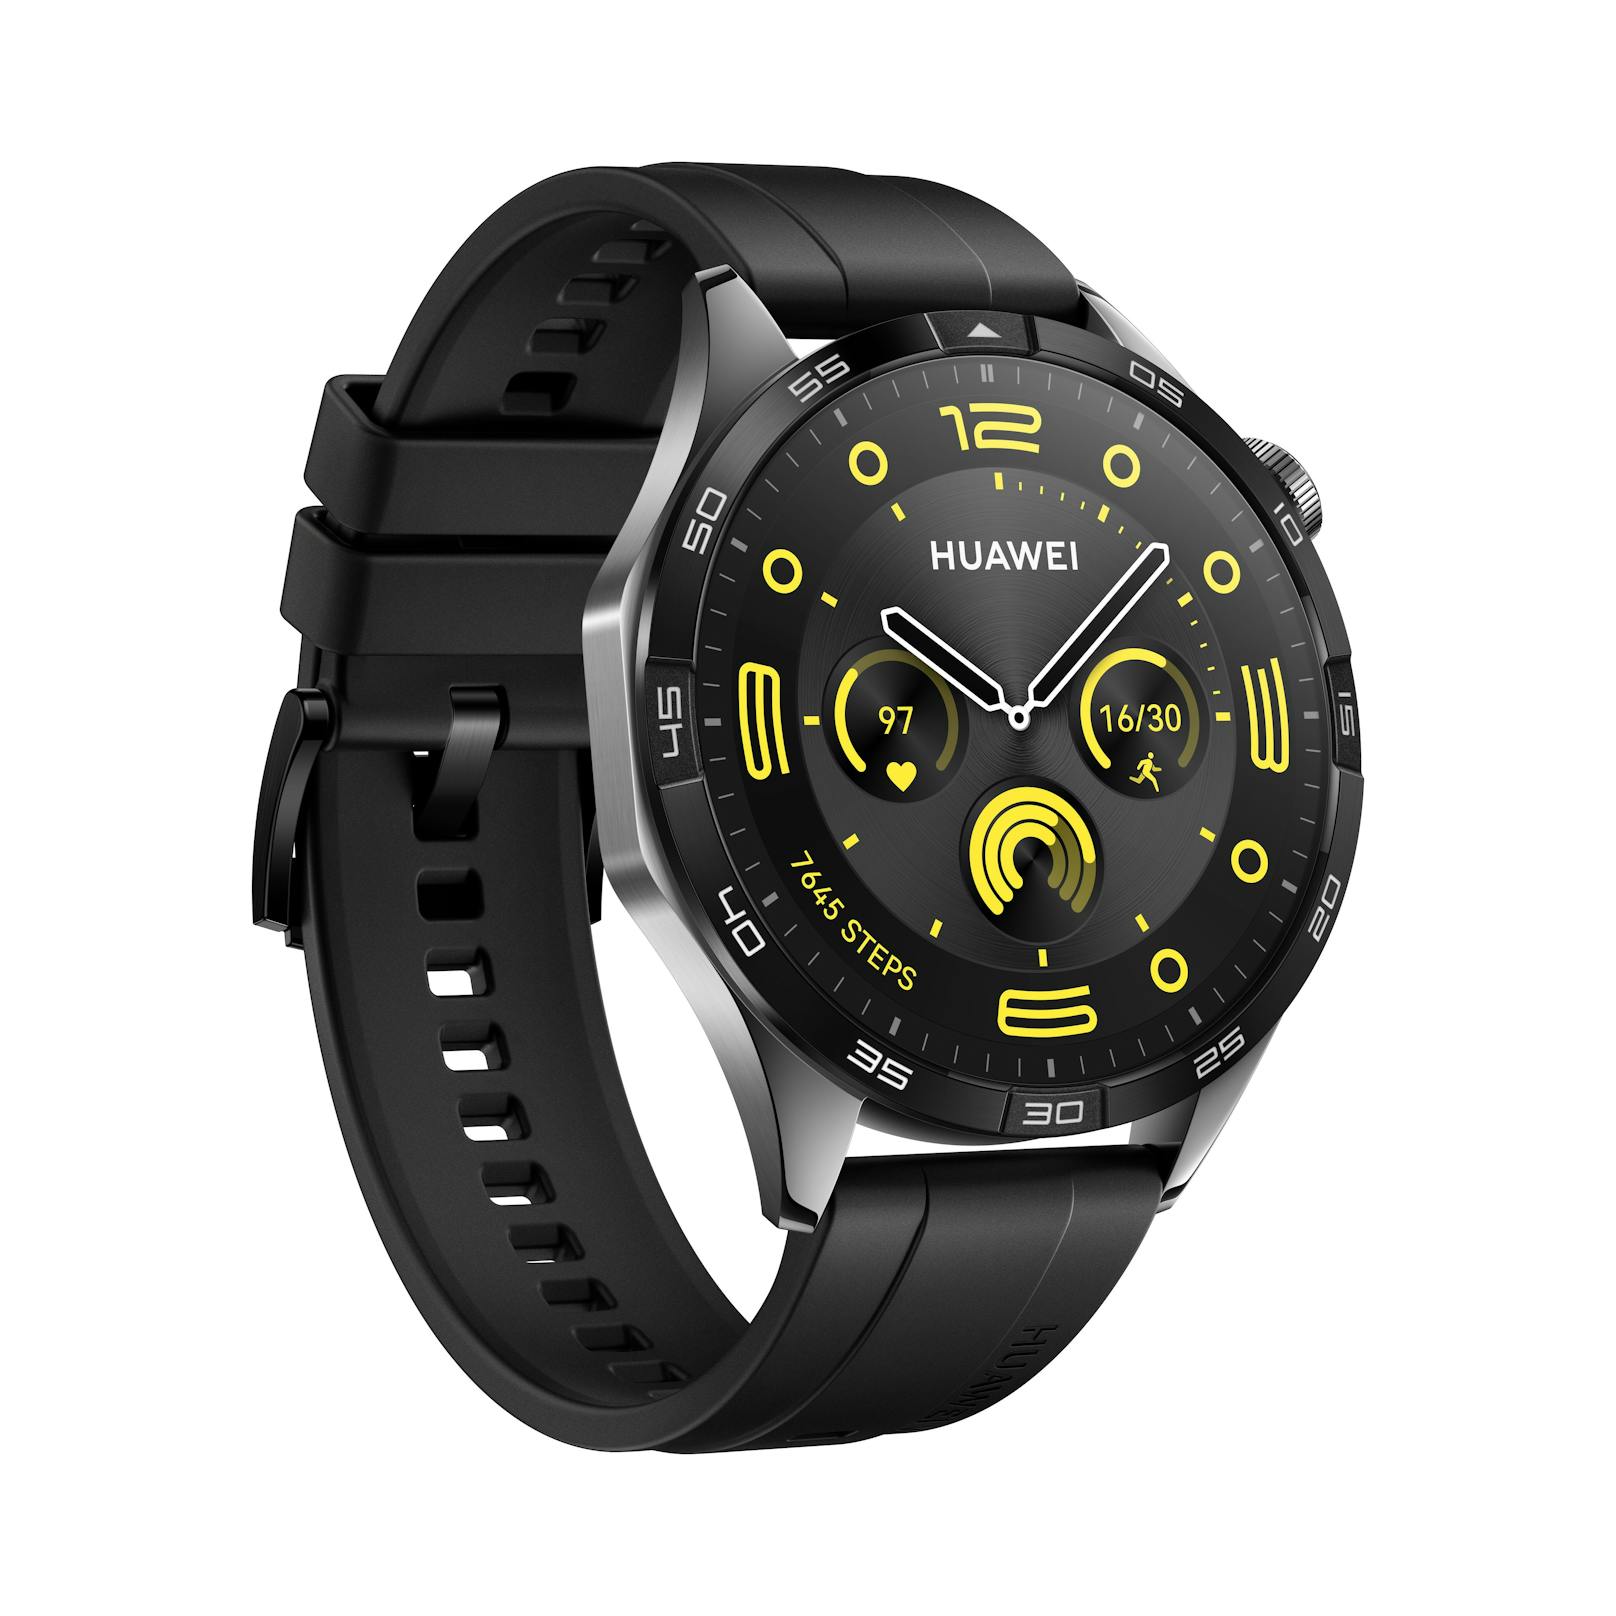 Die neuen Smartwatches sollen "von der Designsprache modischer Uhrenklassiker inspiriert" sein, so Huawei.&nbsp;